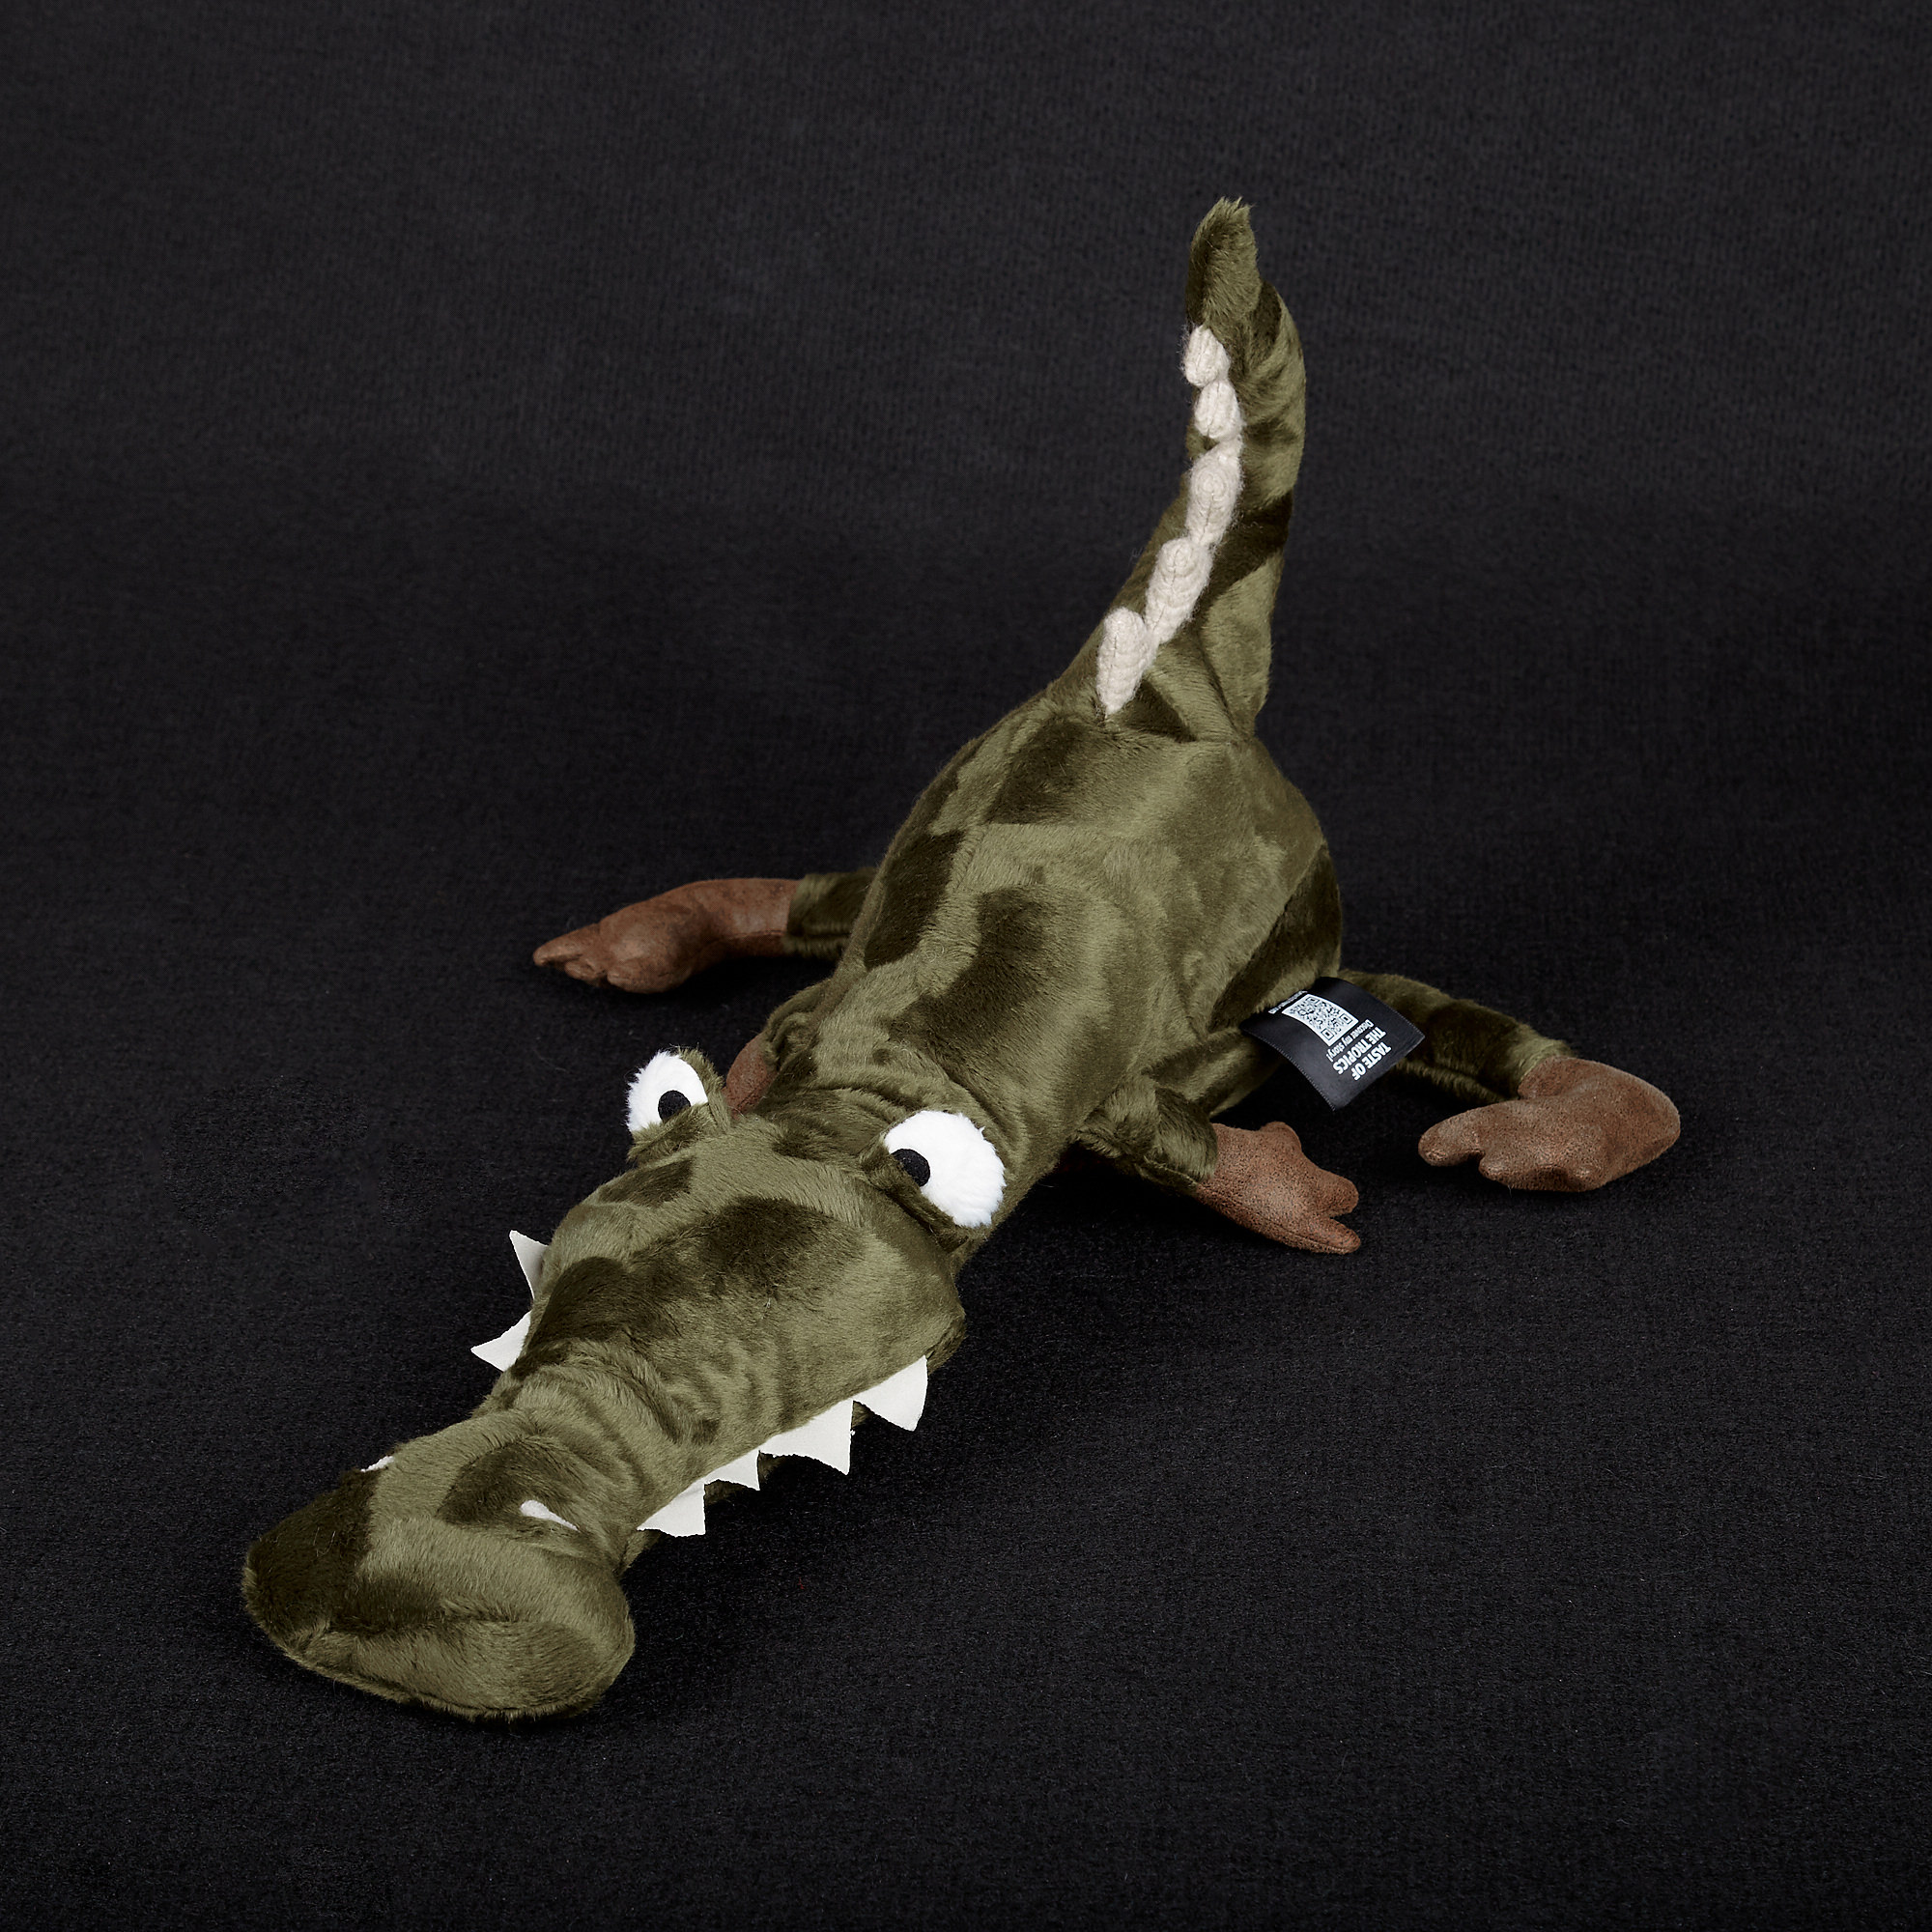 Stuffed toy Crocodile "Taste of the Tropics", BEASTS